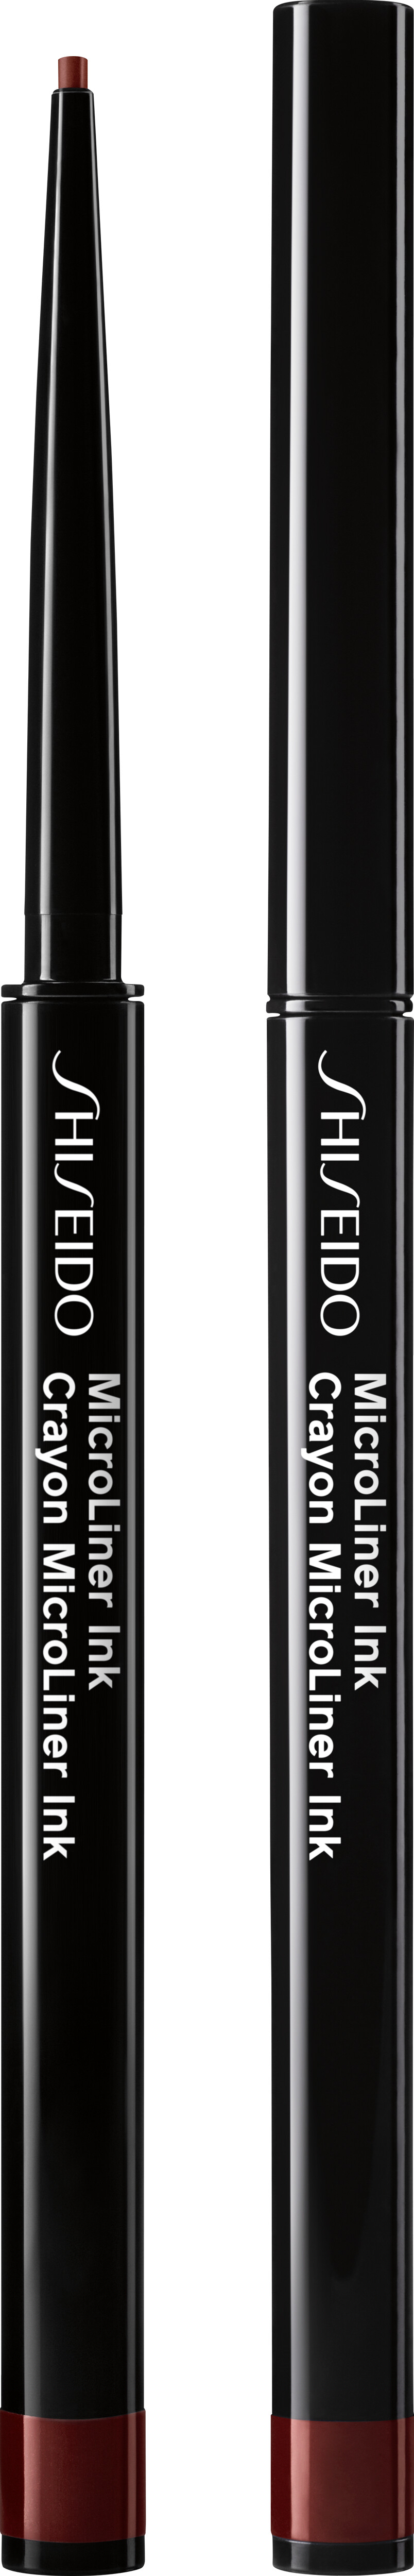 Shiseido MicroLiner Ink 0.08g 03 - Plum